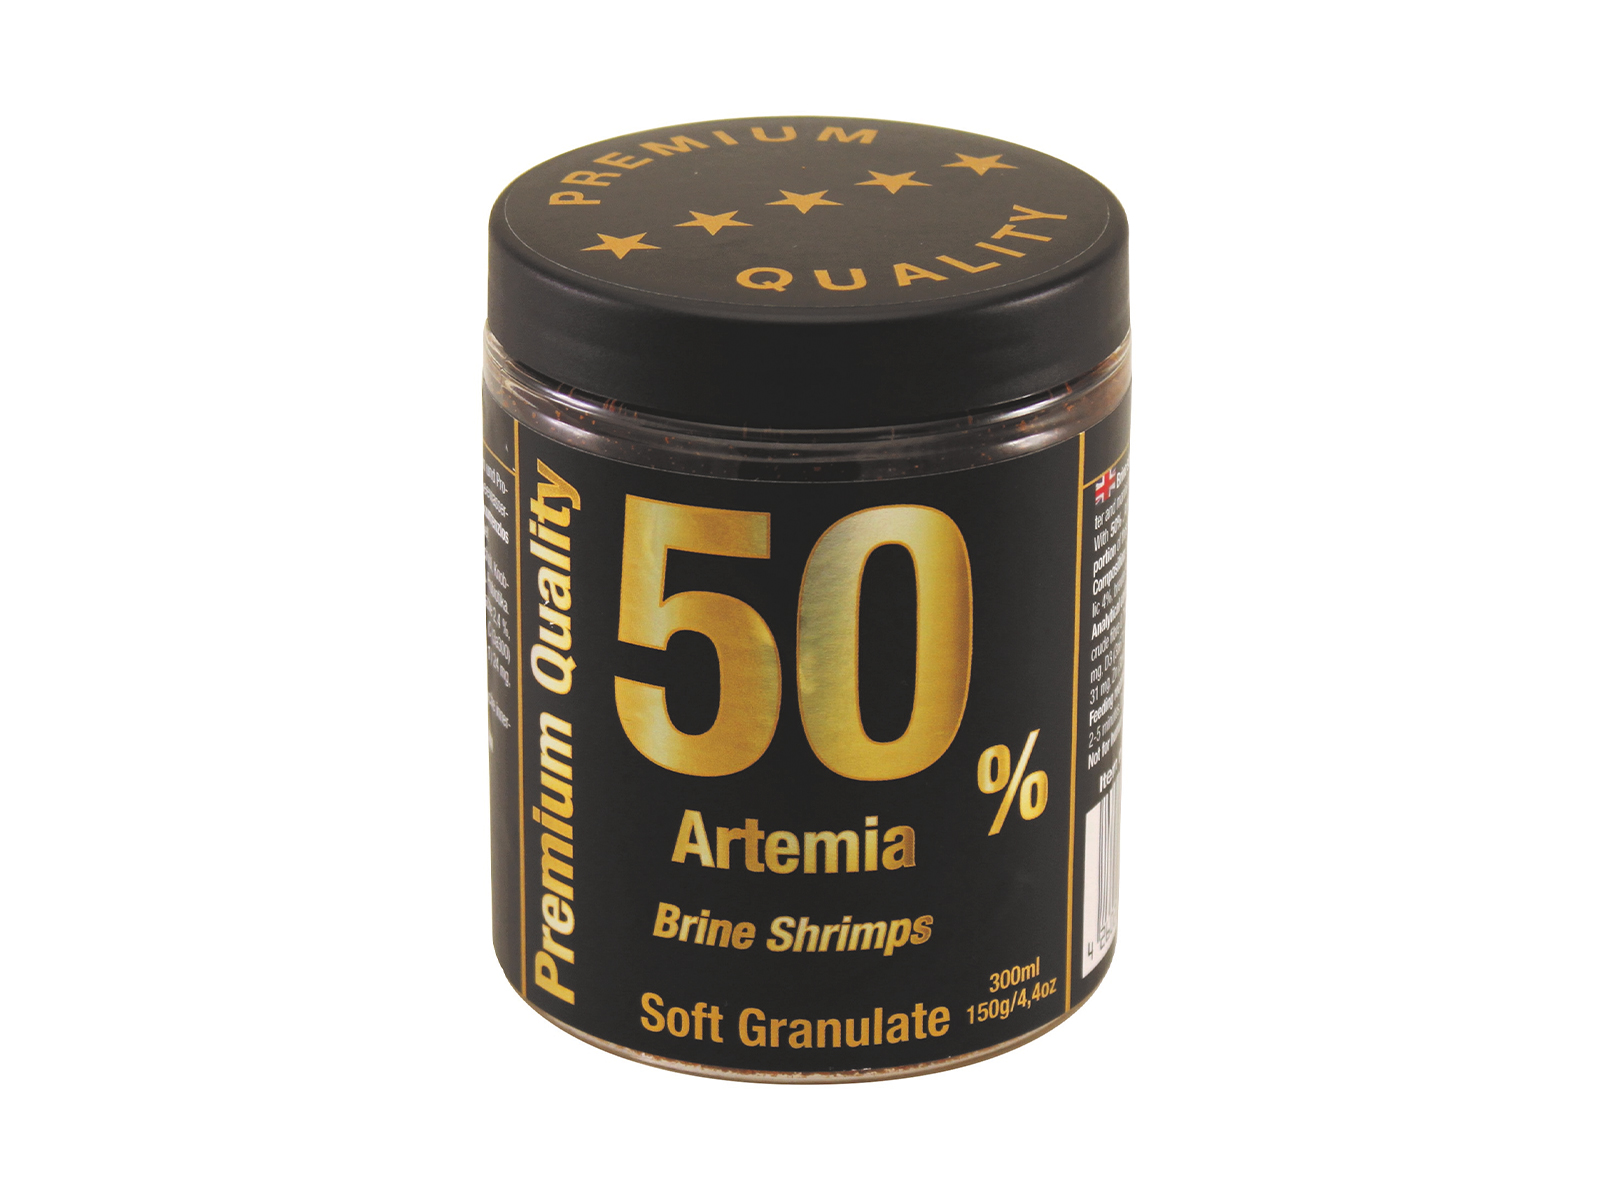 Artemia Brine Shrimps Softgranulat 50 150g Discusfood